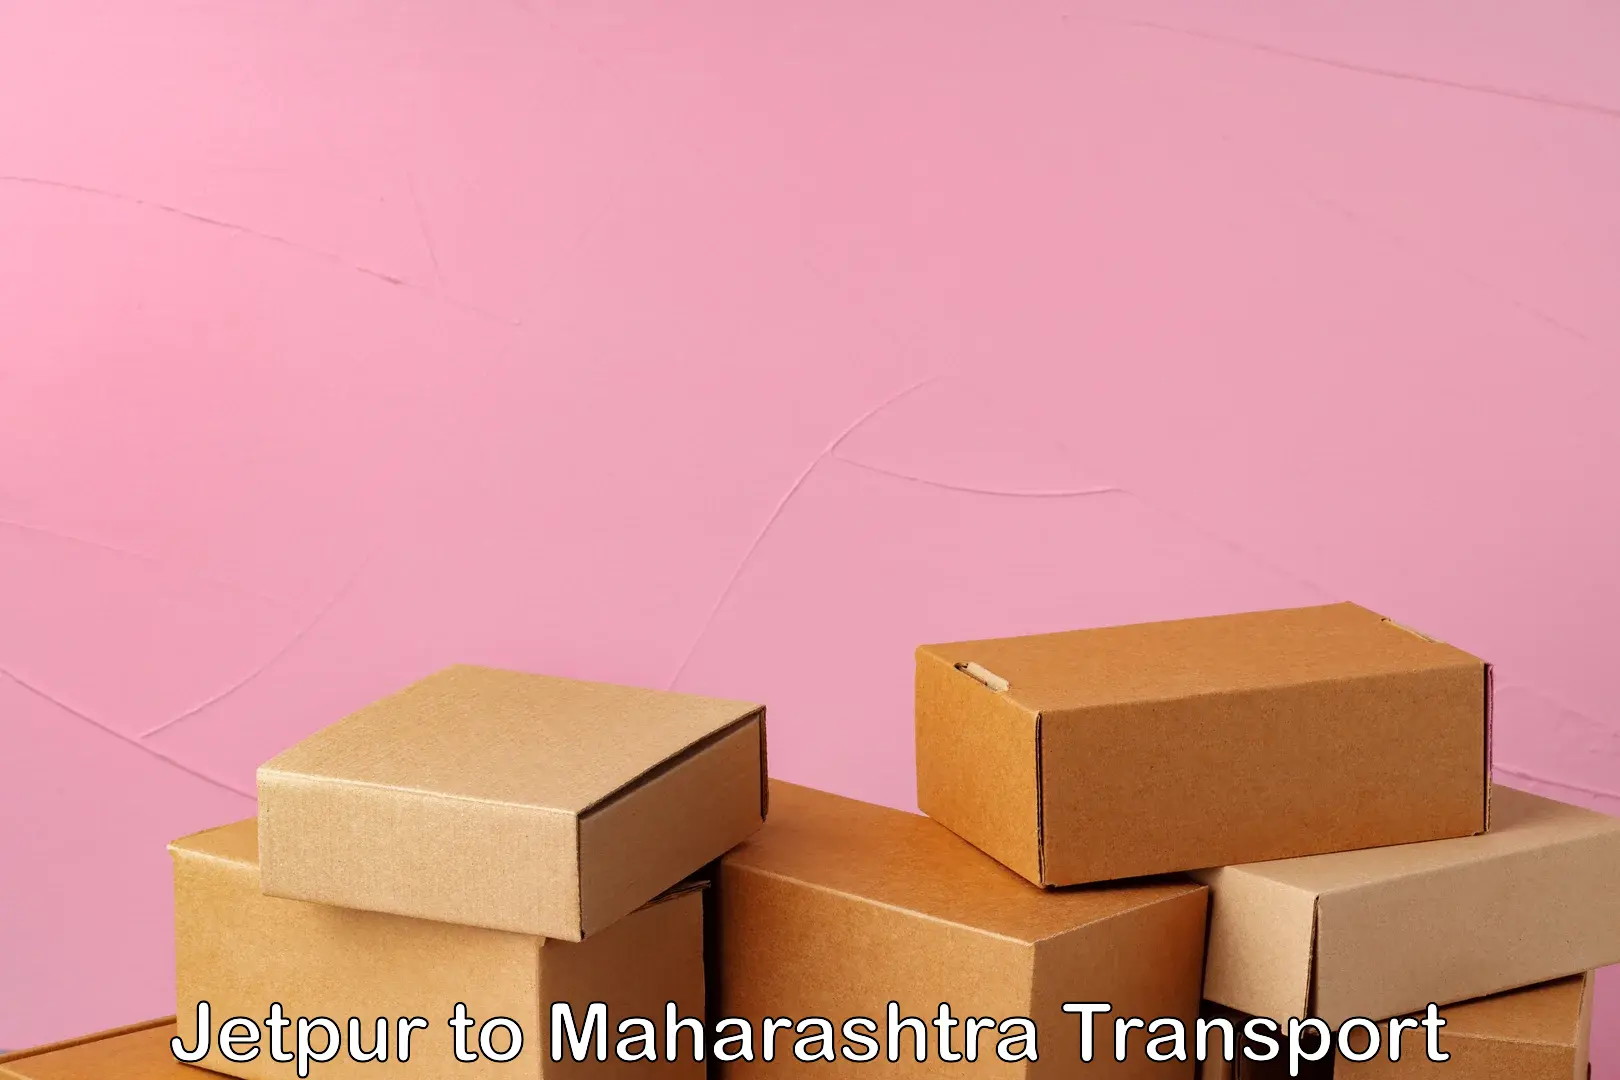 Daily transport service Jetpur to Maharashtra